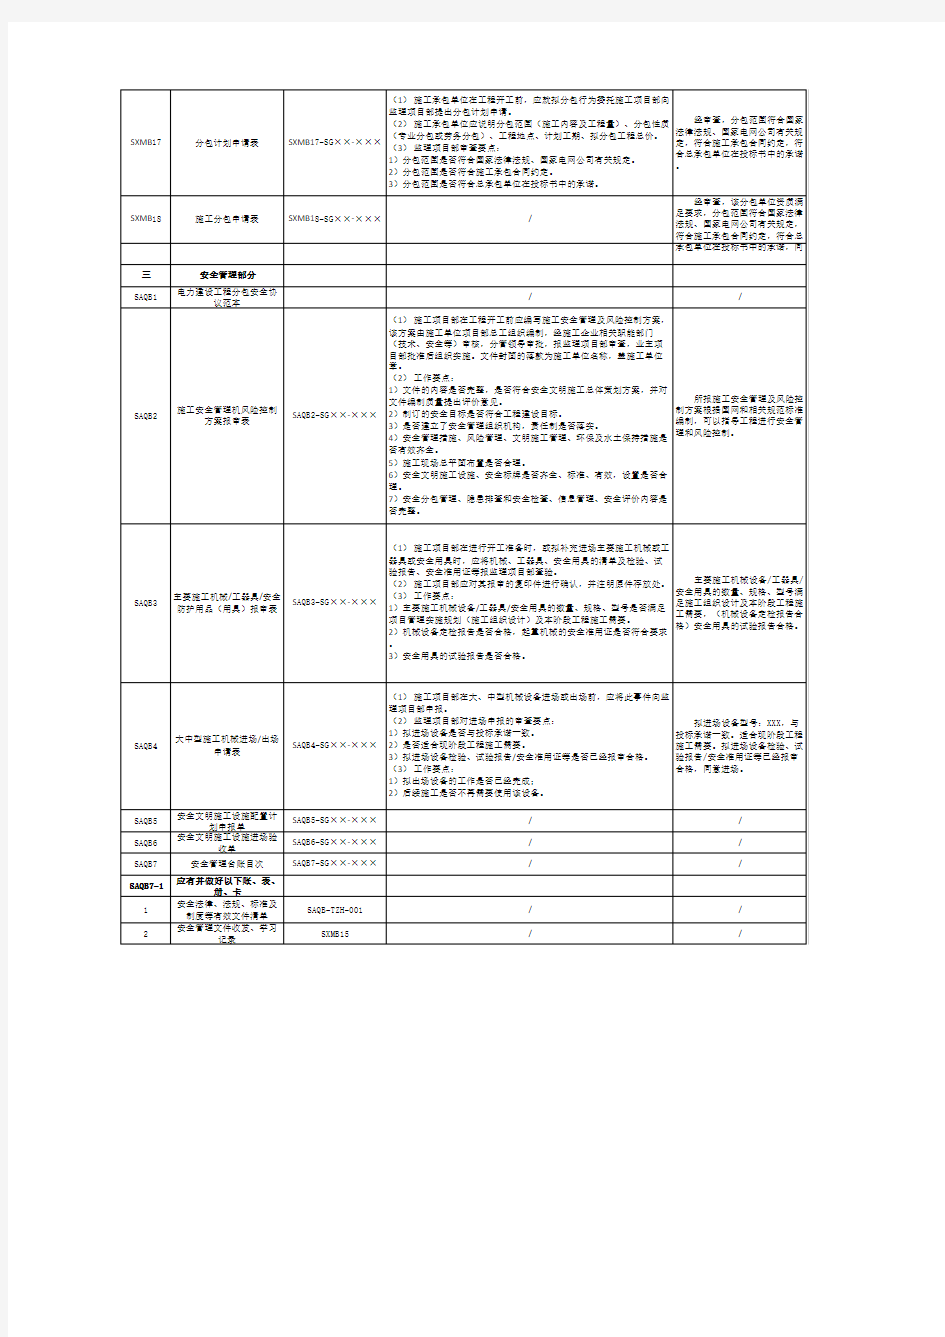 2014版国家电网公司施工项目部标准化管理手册(变电工程)目录及监理审批标准用语